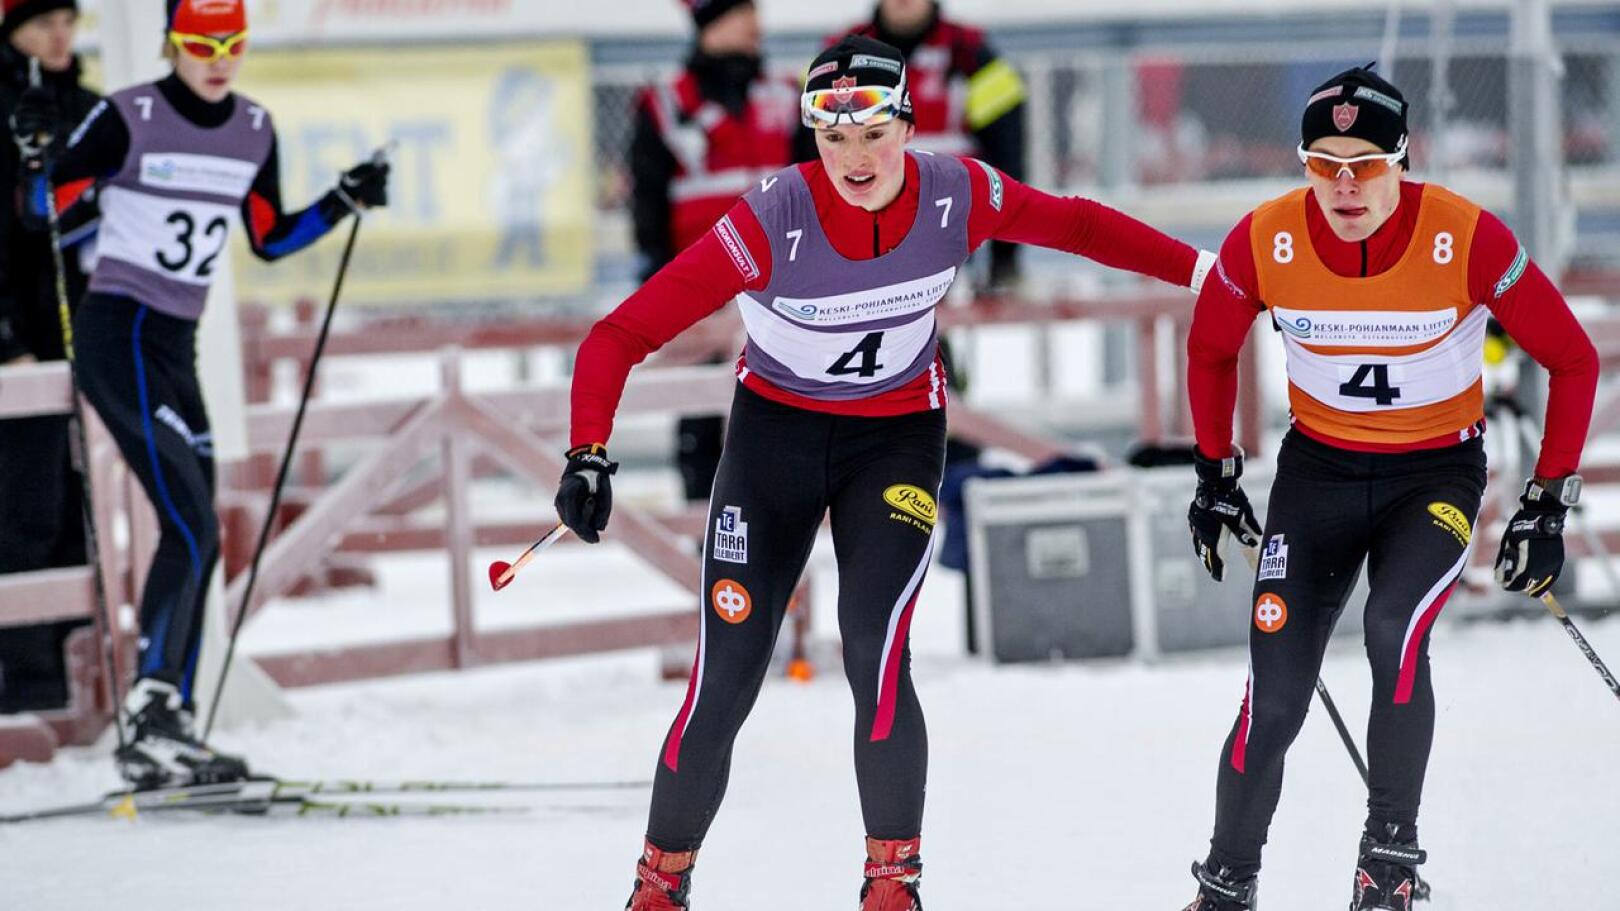 Kruunupyy vei nimiinsä seitsemännen Keskipohjanmaan Kilven, josta hiihdettiin vuosina 2012-22. Vetelissä 2017 Kruunupyyn viestiä veivät Axel Auren (vas.) ja Hugo Karlström.